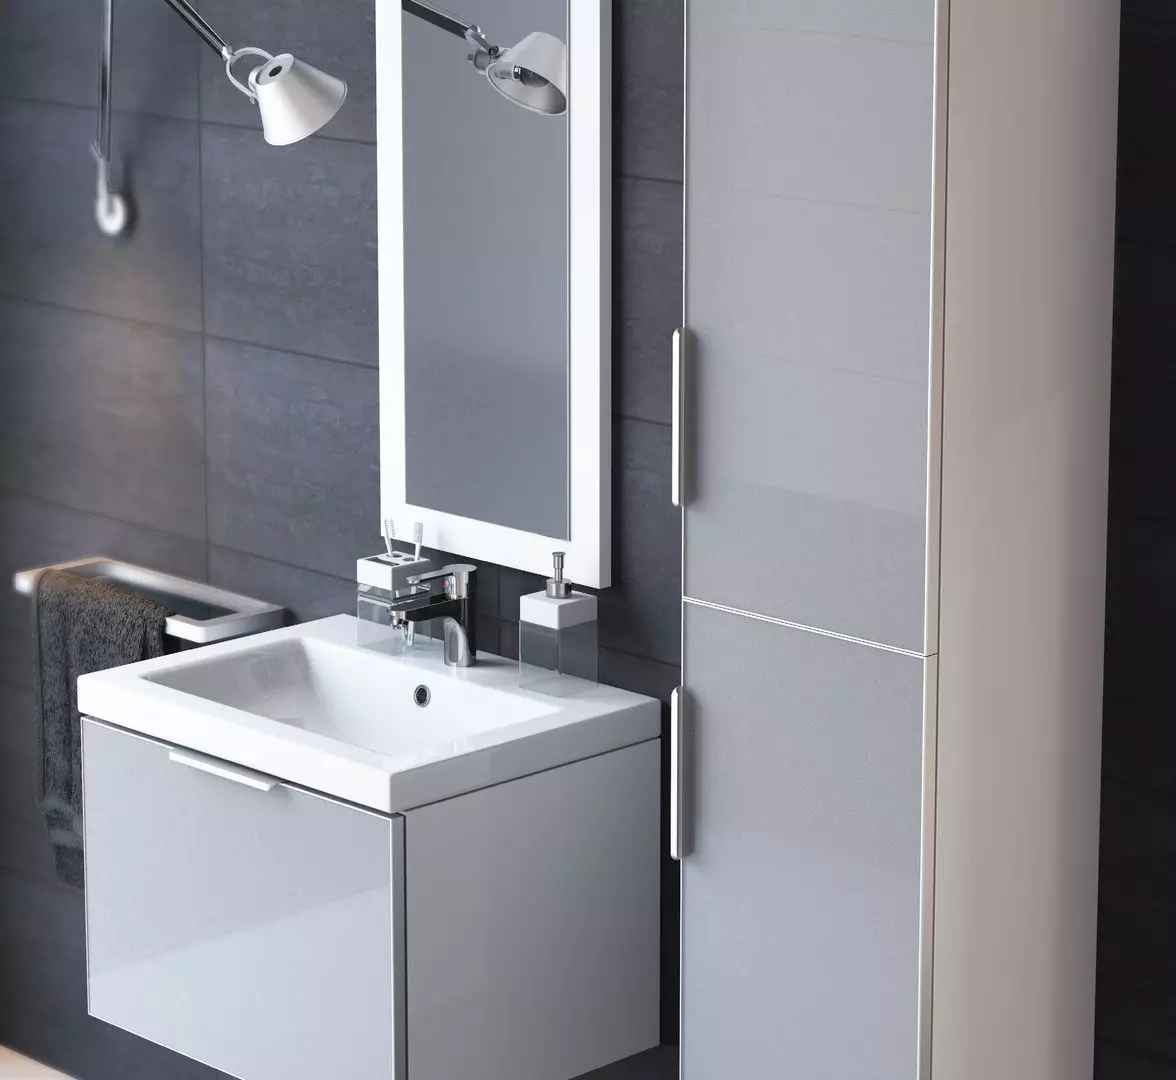 سینک معلق در حمام: دستشویی نصب شده 50-60 سانتی متر با براکت و شستشو بدون برش 55-80 سانتی متر، مدل های دیگر 21424_57